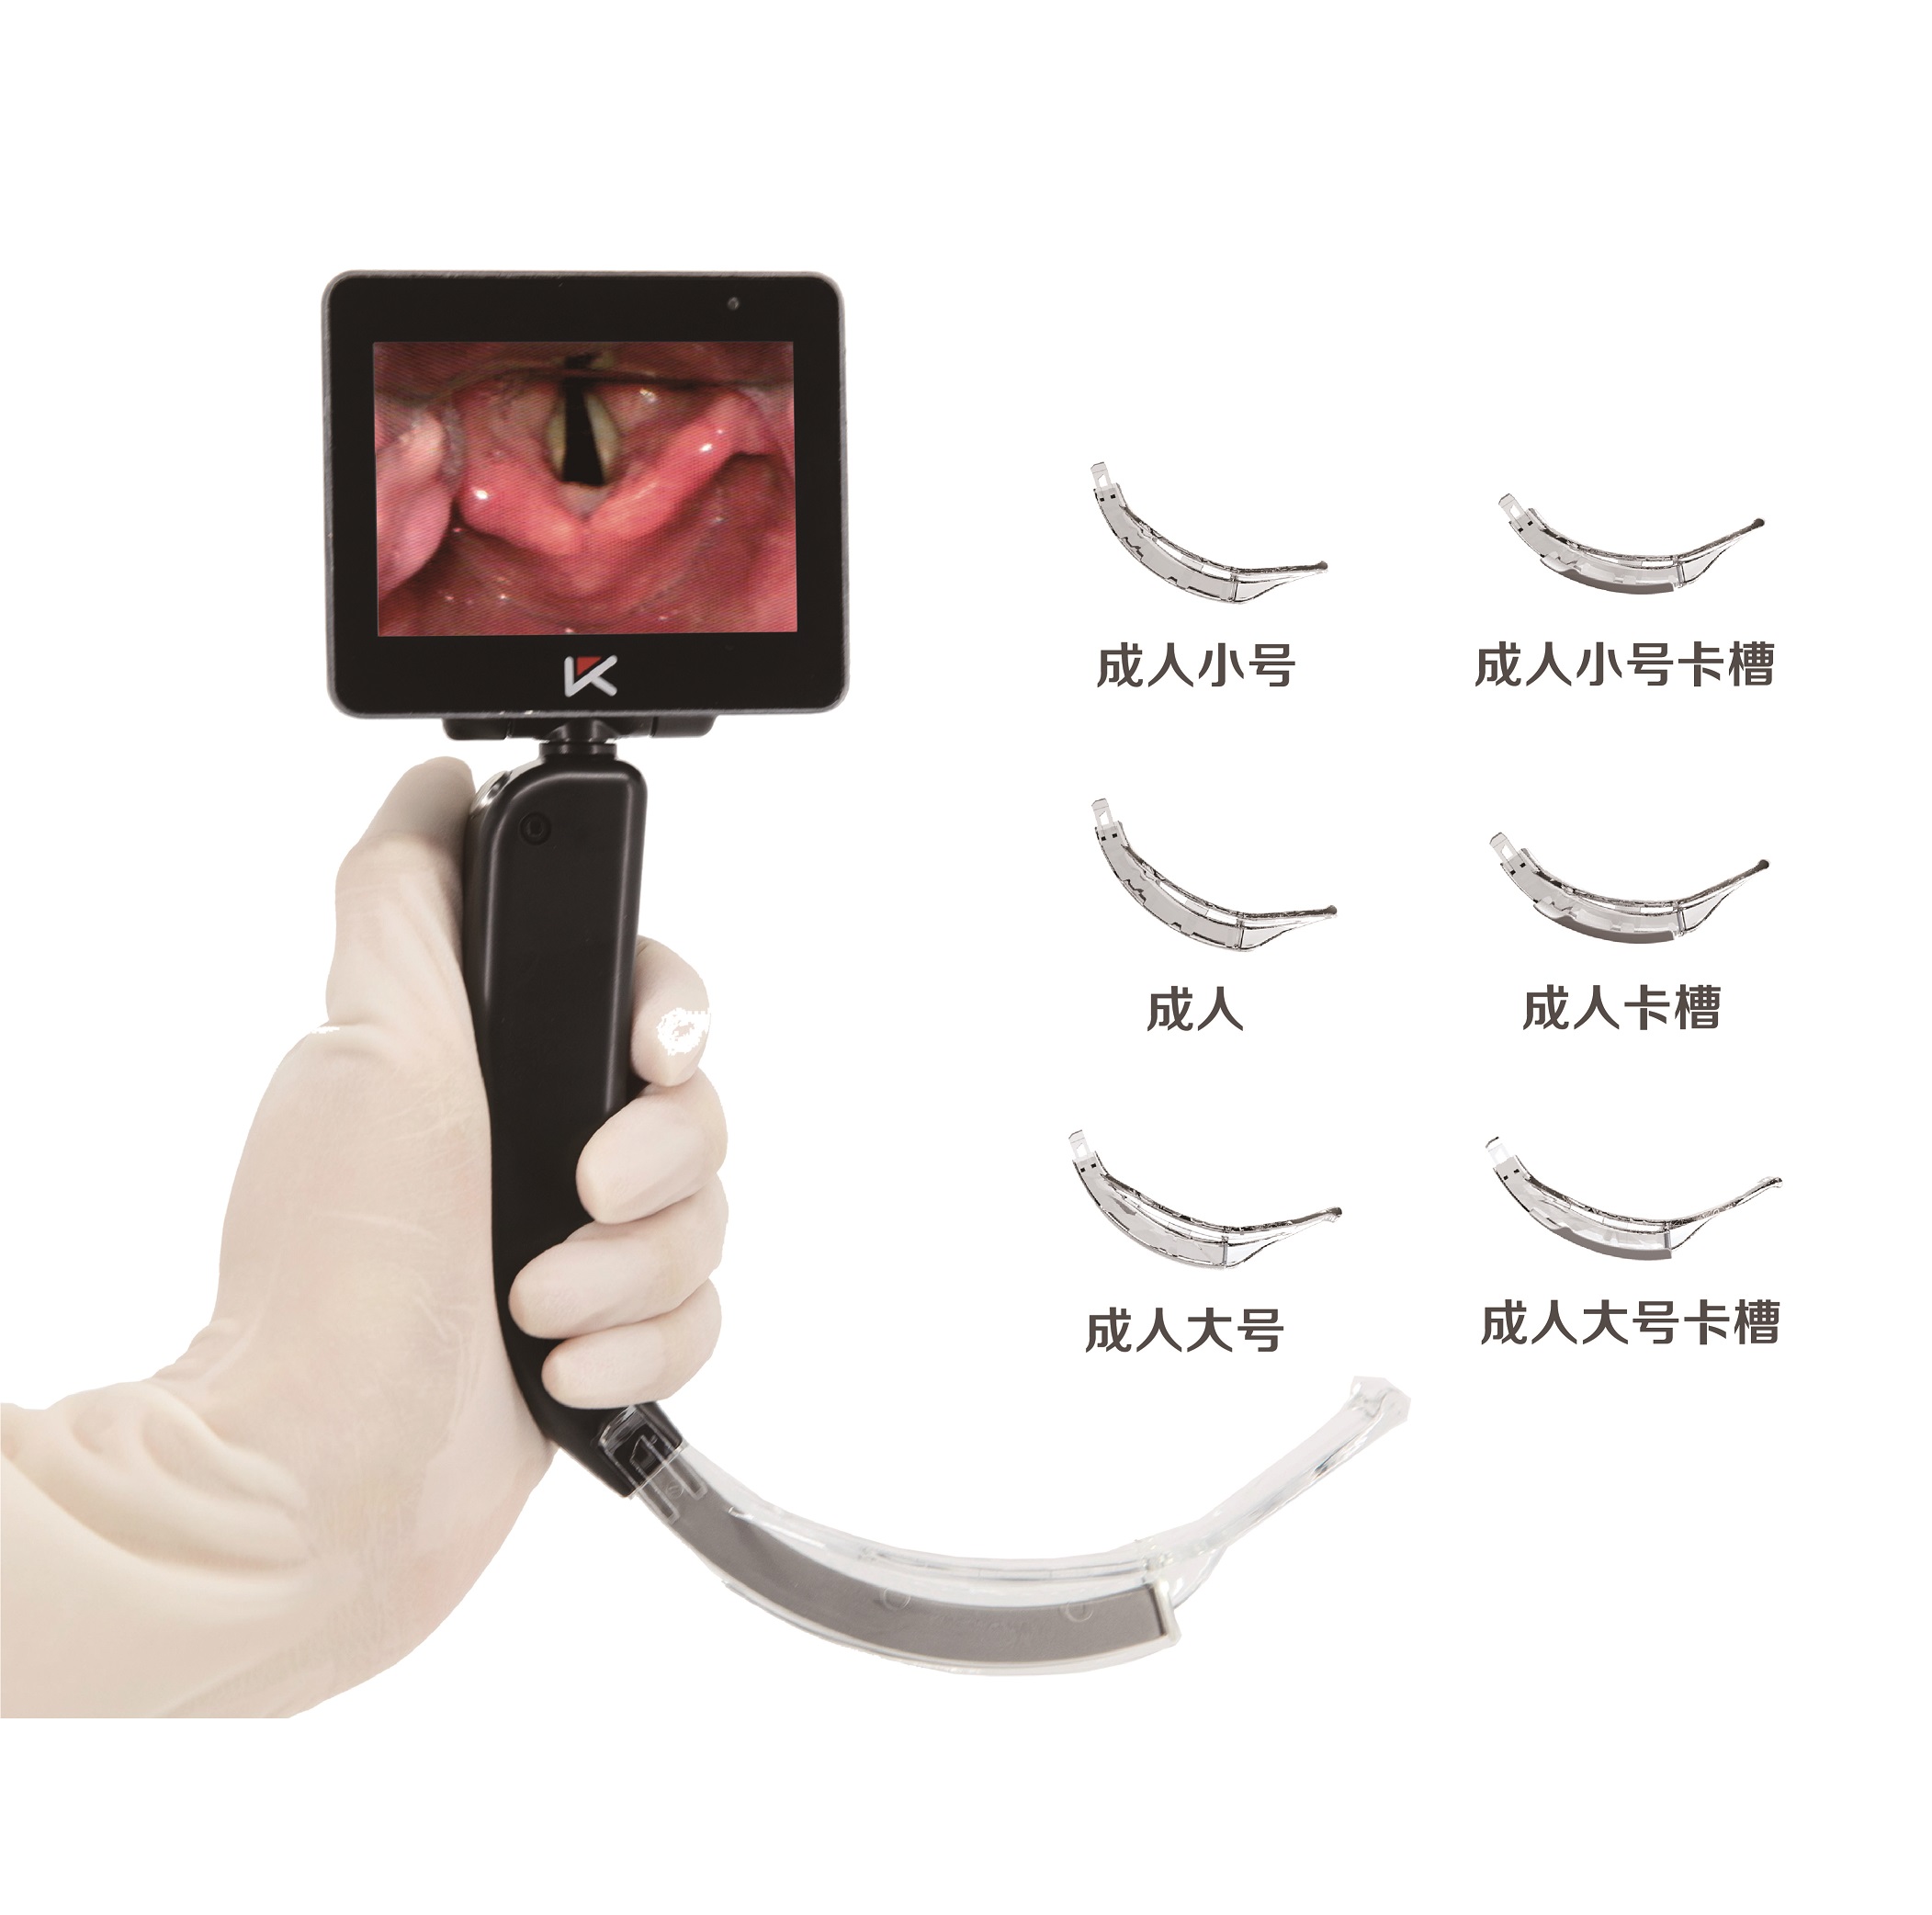 可视喉镜厂家鼹鼠医疗视频喉镜YS-IL优可视 鼹鼠医疗视频喉镜